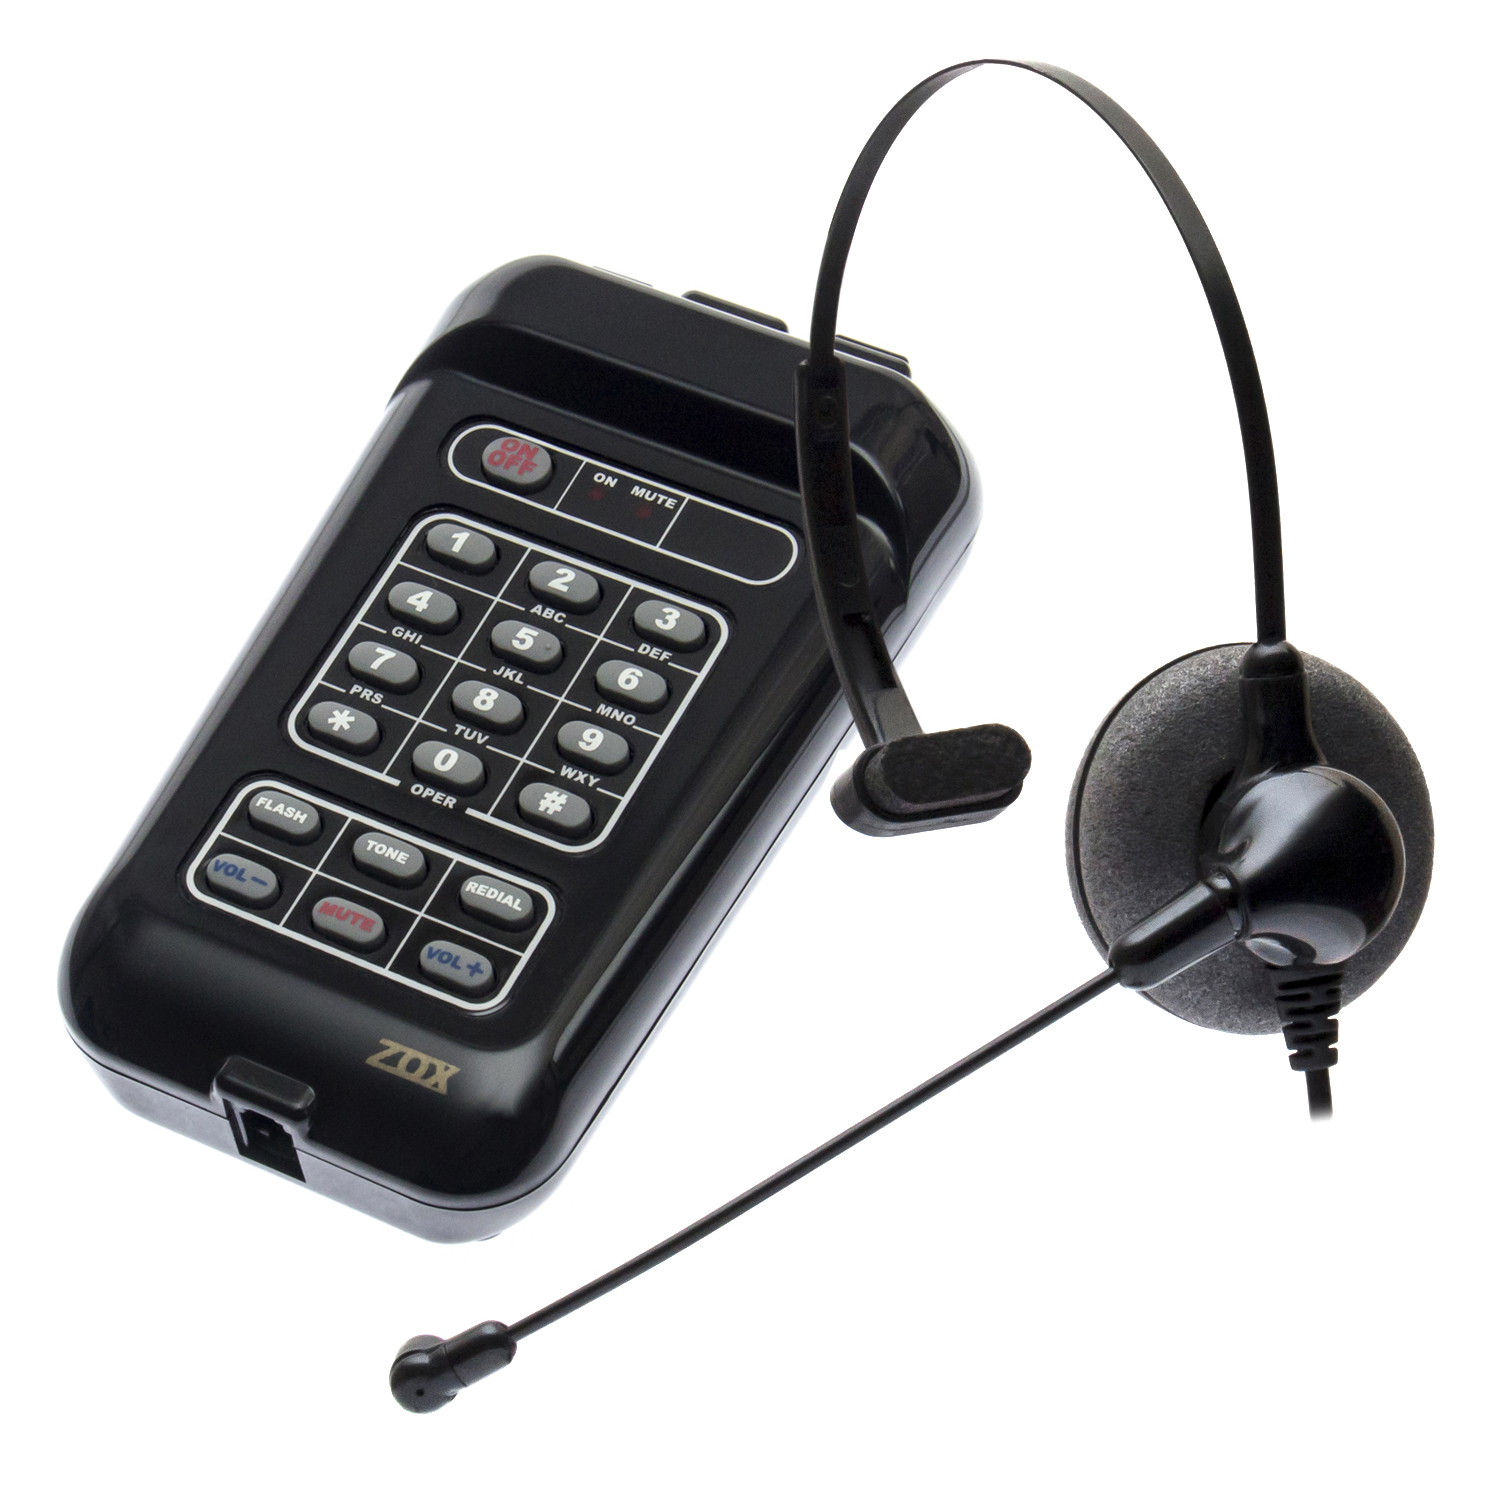 Zox Telecom Tecnologia em Headset - TZ-20